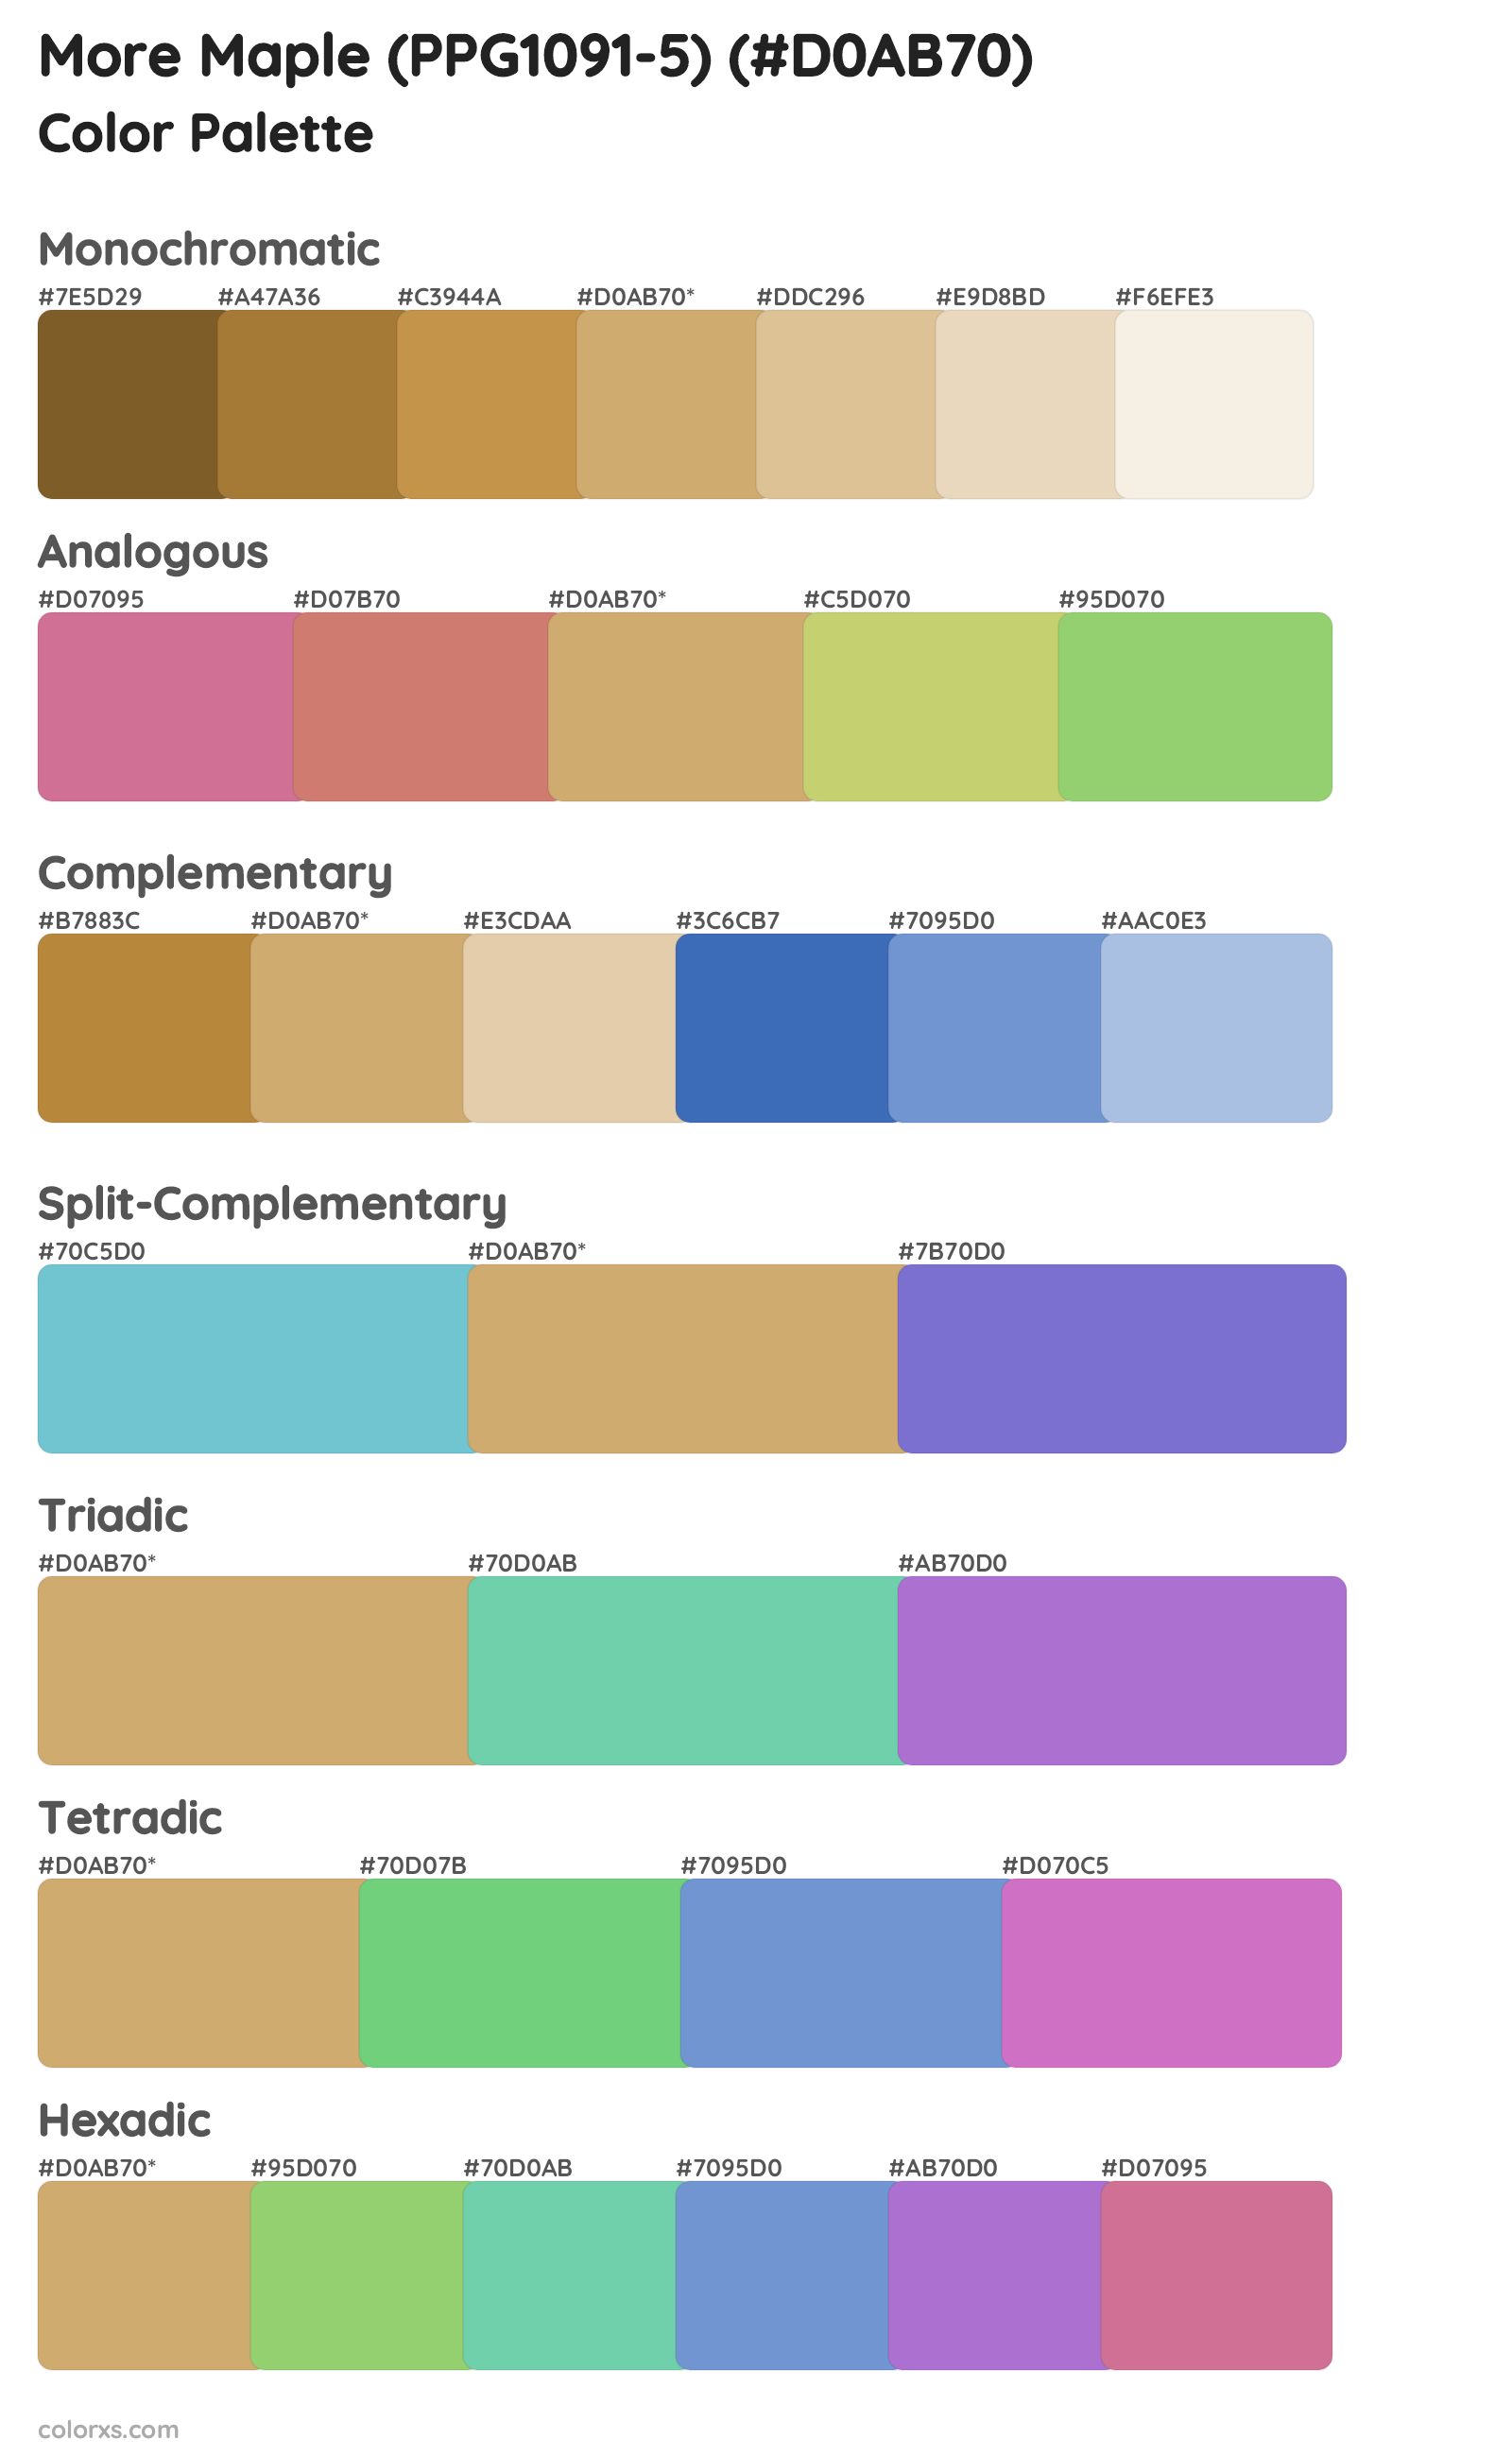 More Maple (PPG1091-5) Color Scheme Palettes